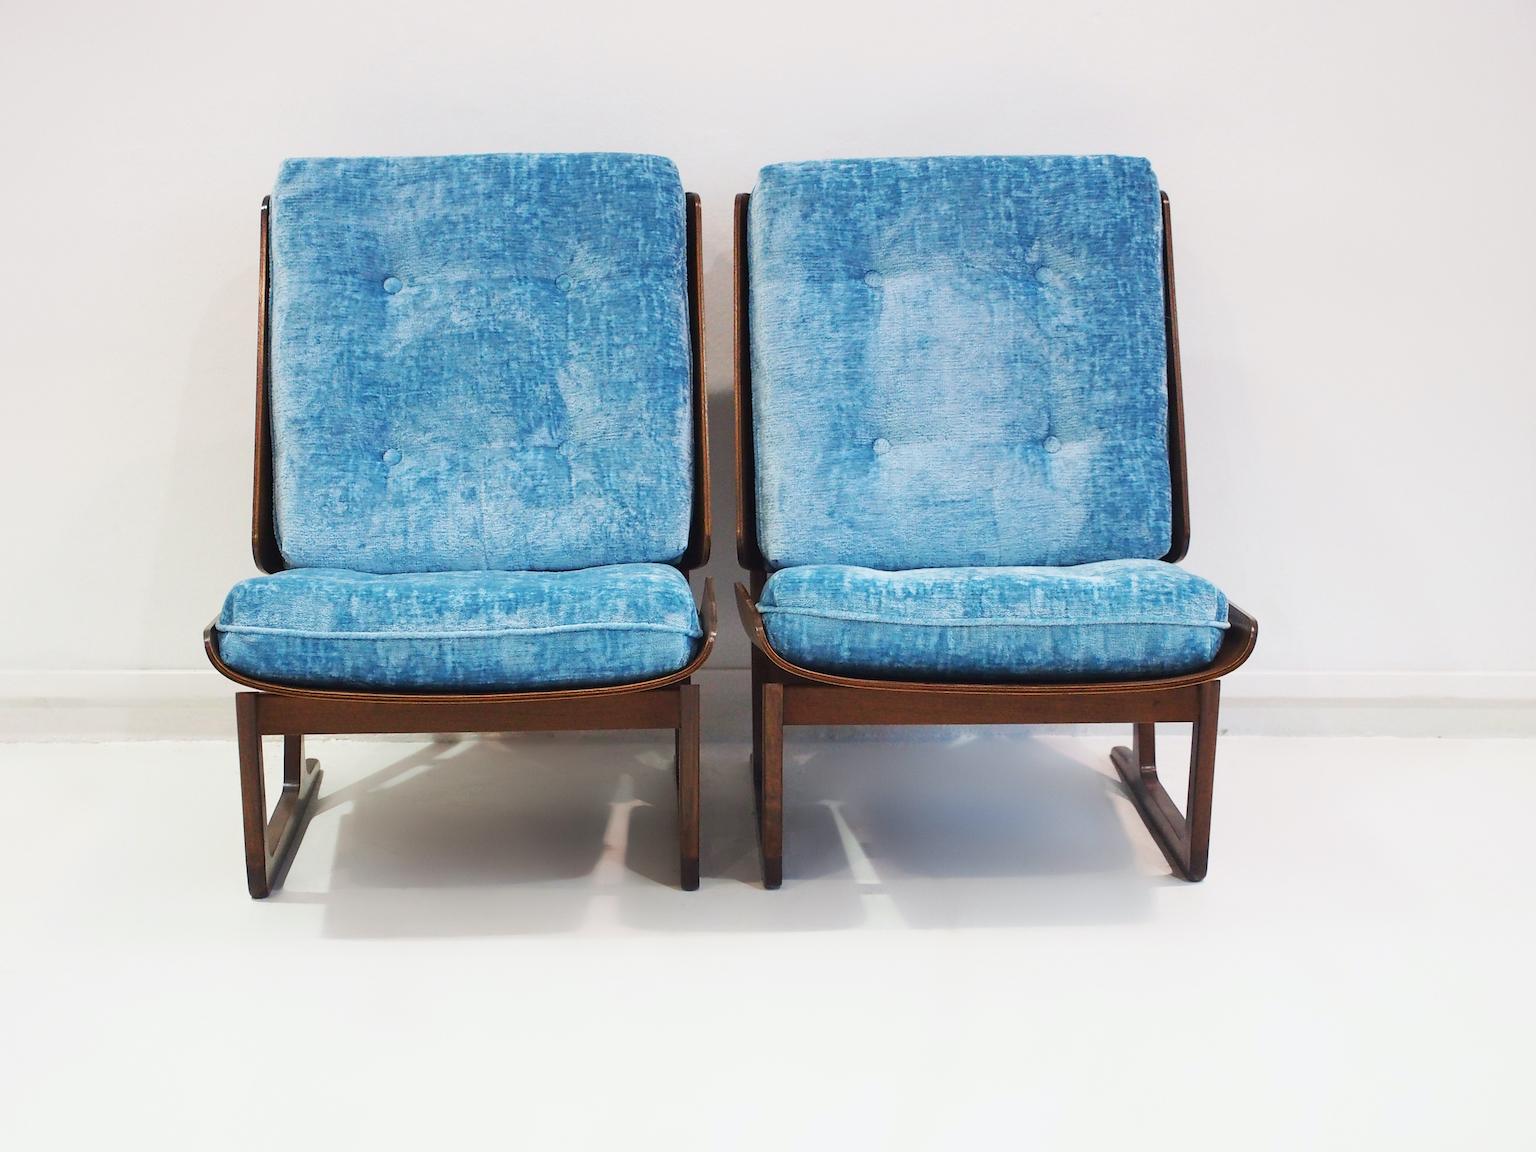 Paire de chaises longues des années 1950. Il convient de noter que le dossier des chaises est constitué d'un seul bloc de bois qui s'enroule autour du coussin. Le même design est utilisé pour le siège. Certains ont attribué le design à une créatrice